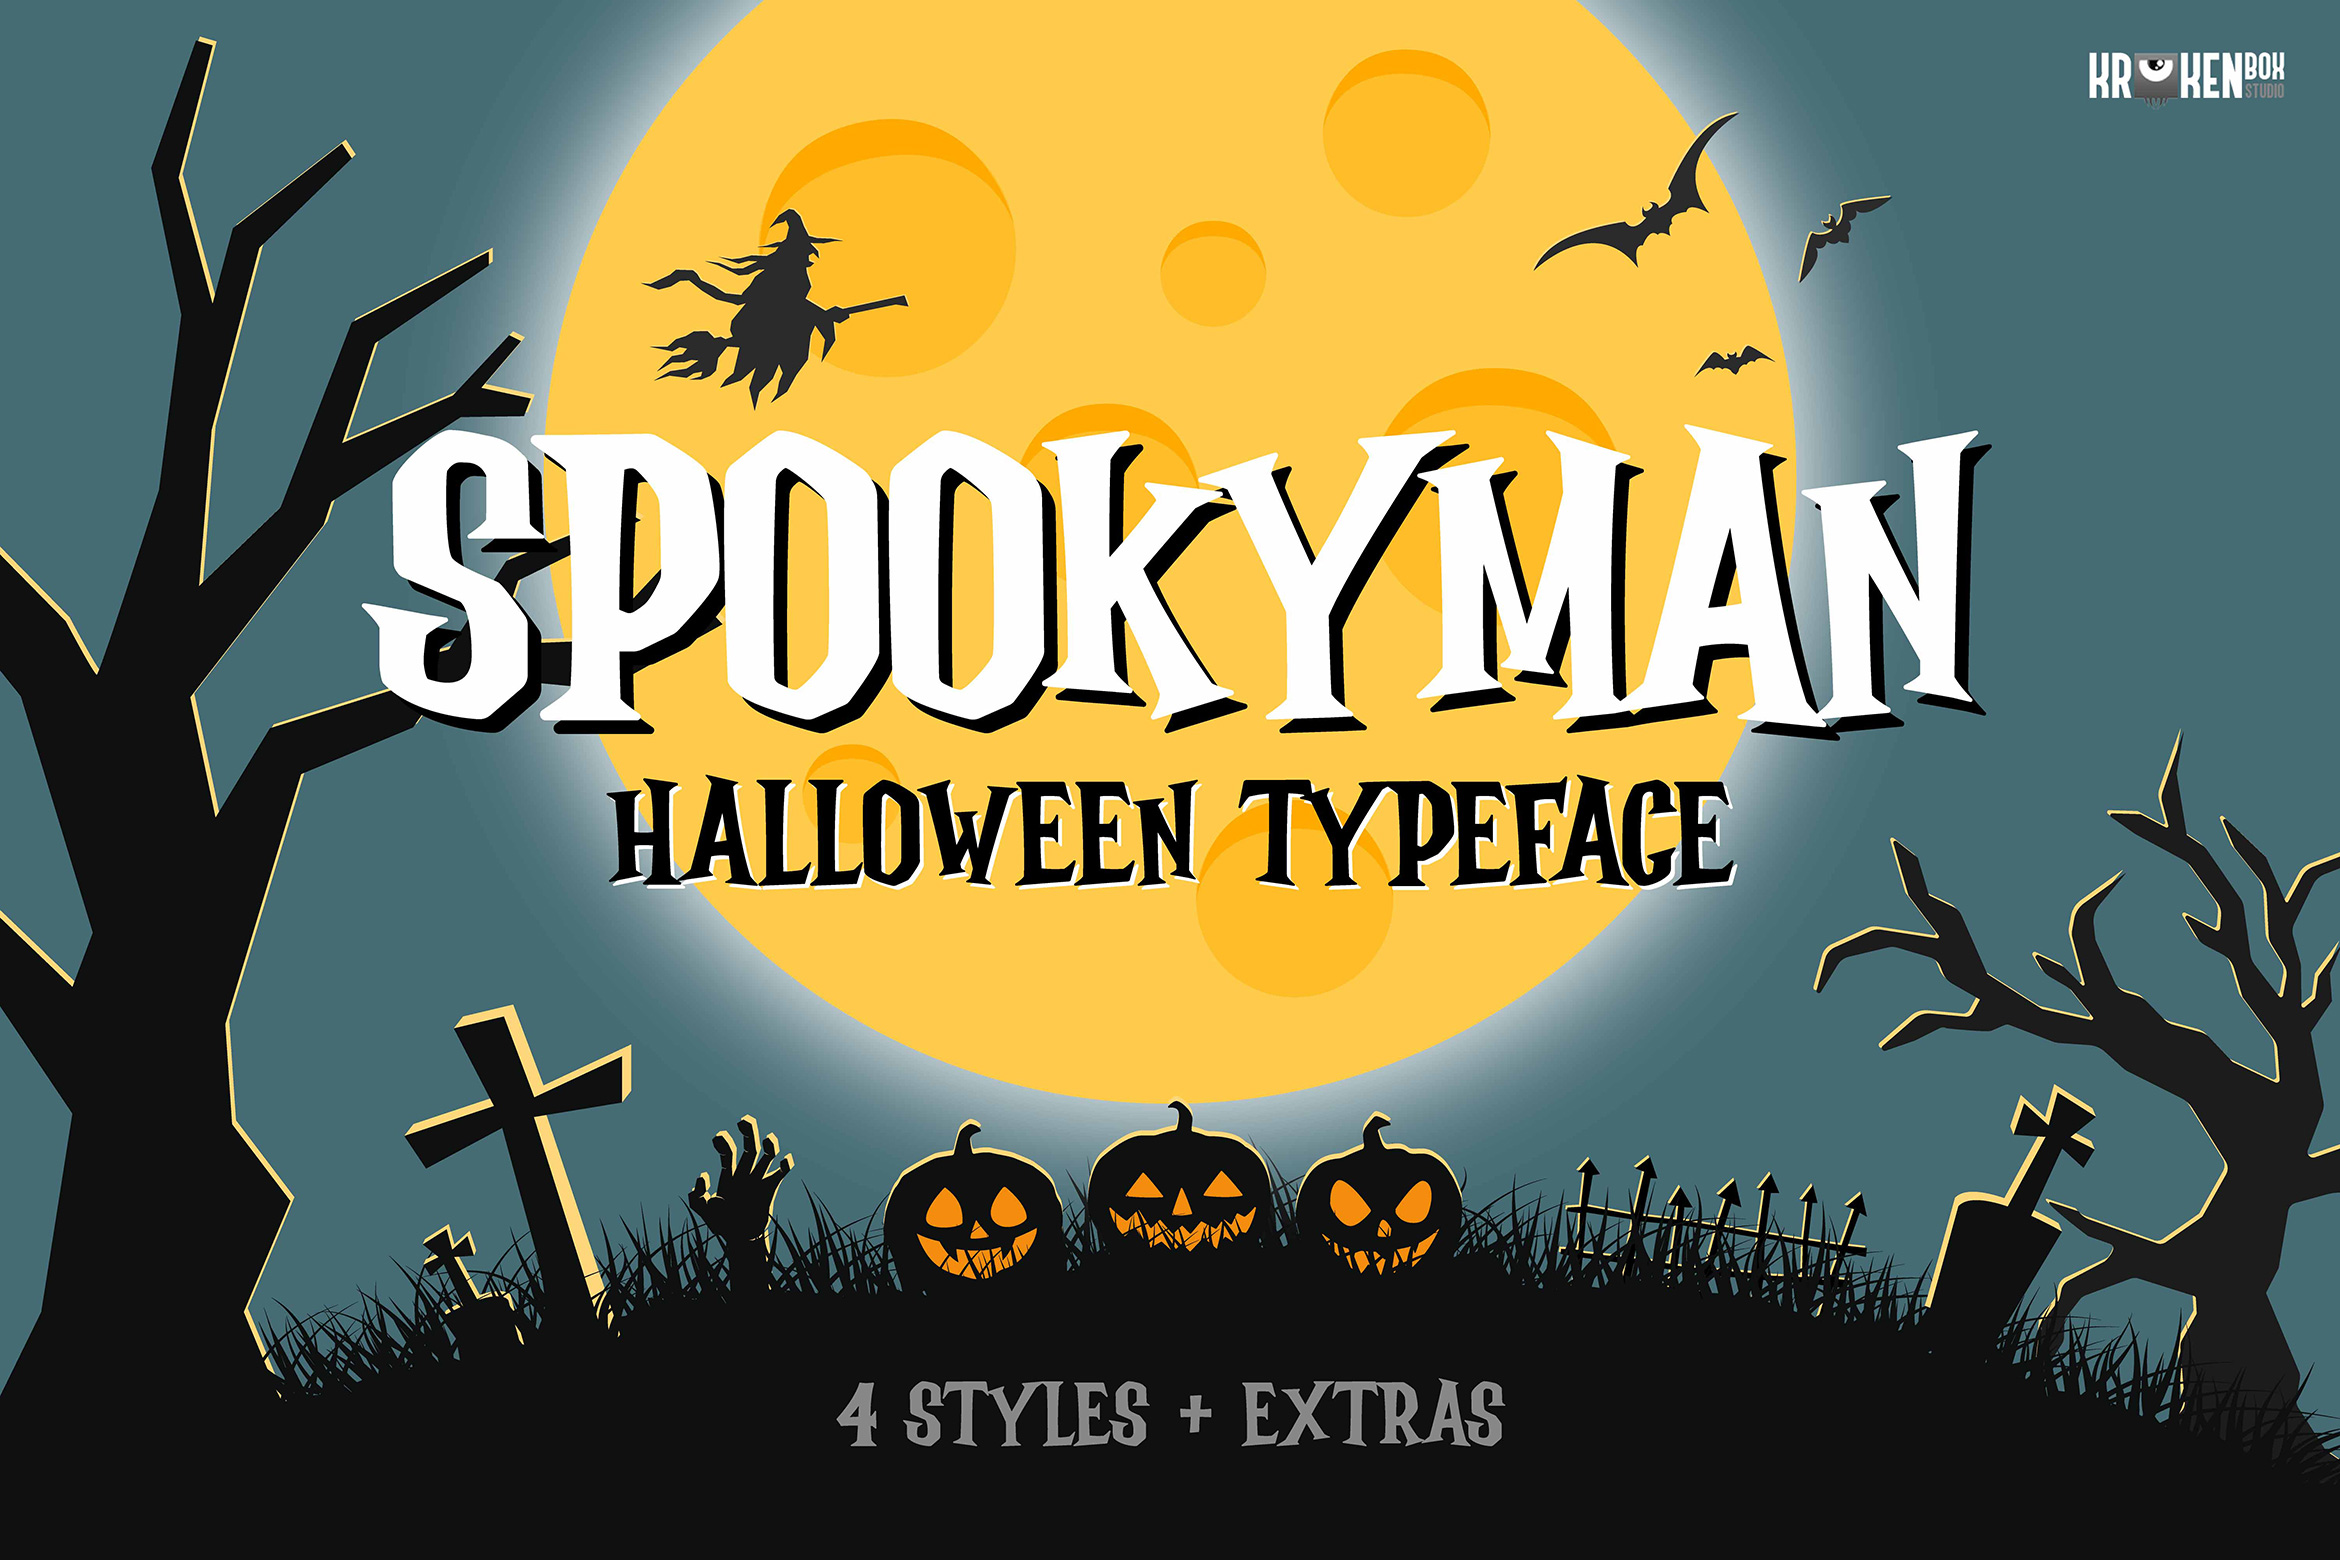 Spookyman